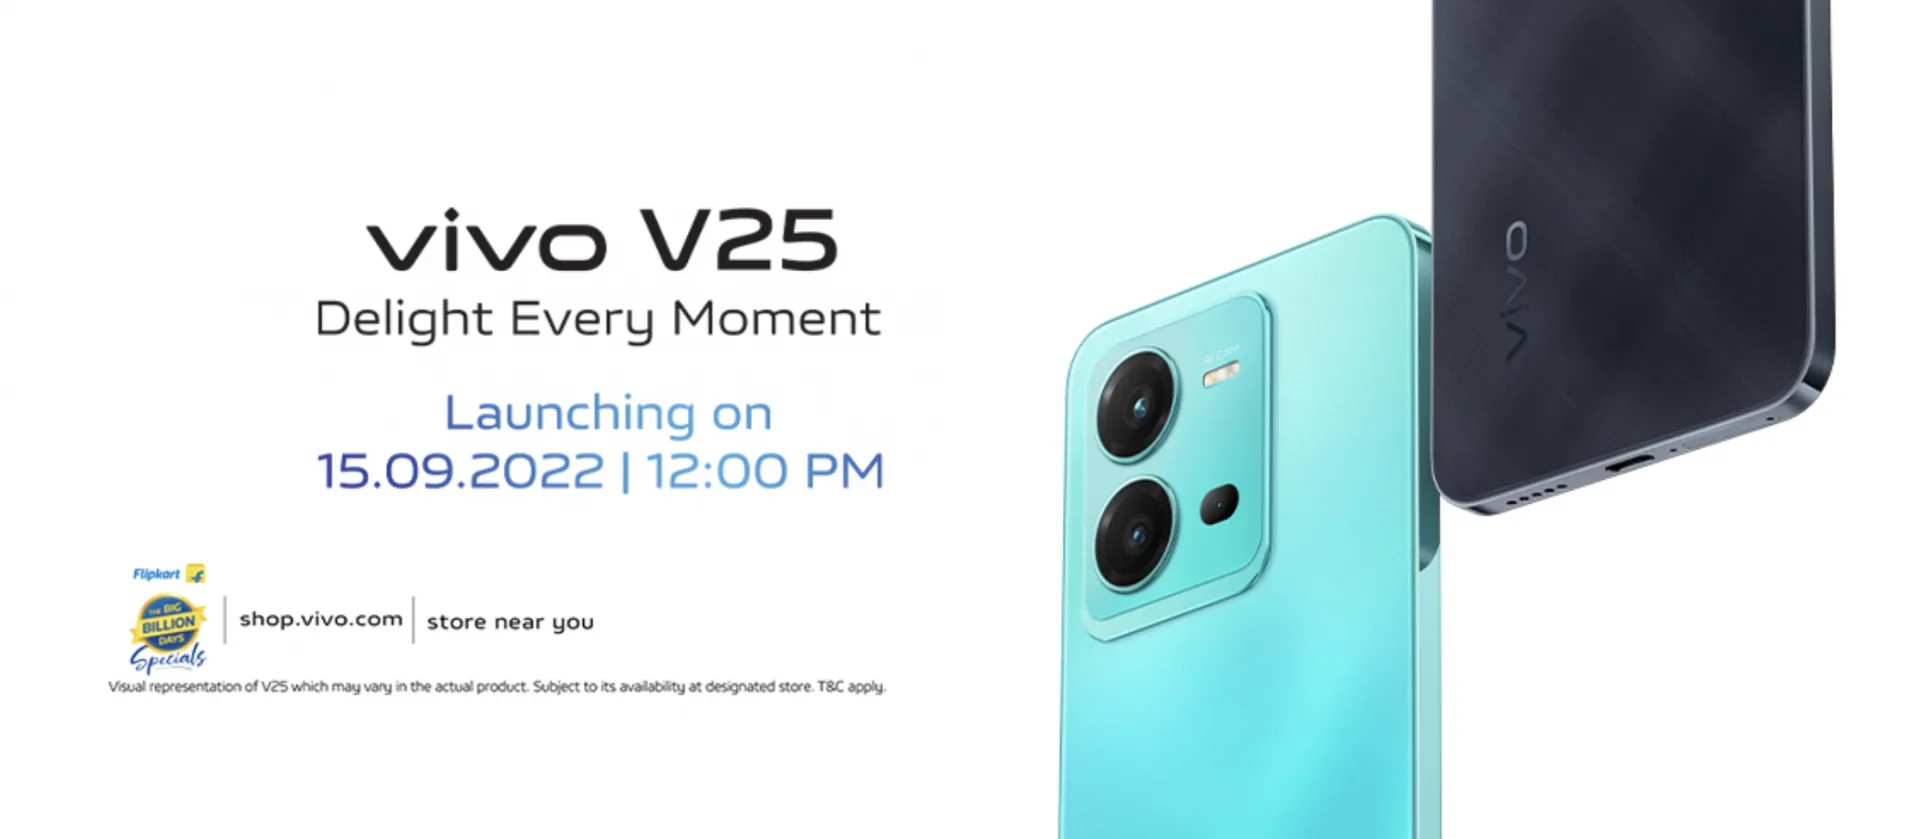 Vivo V25 launch date